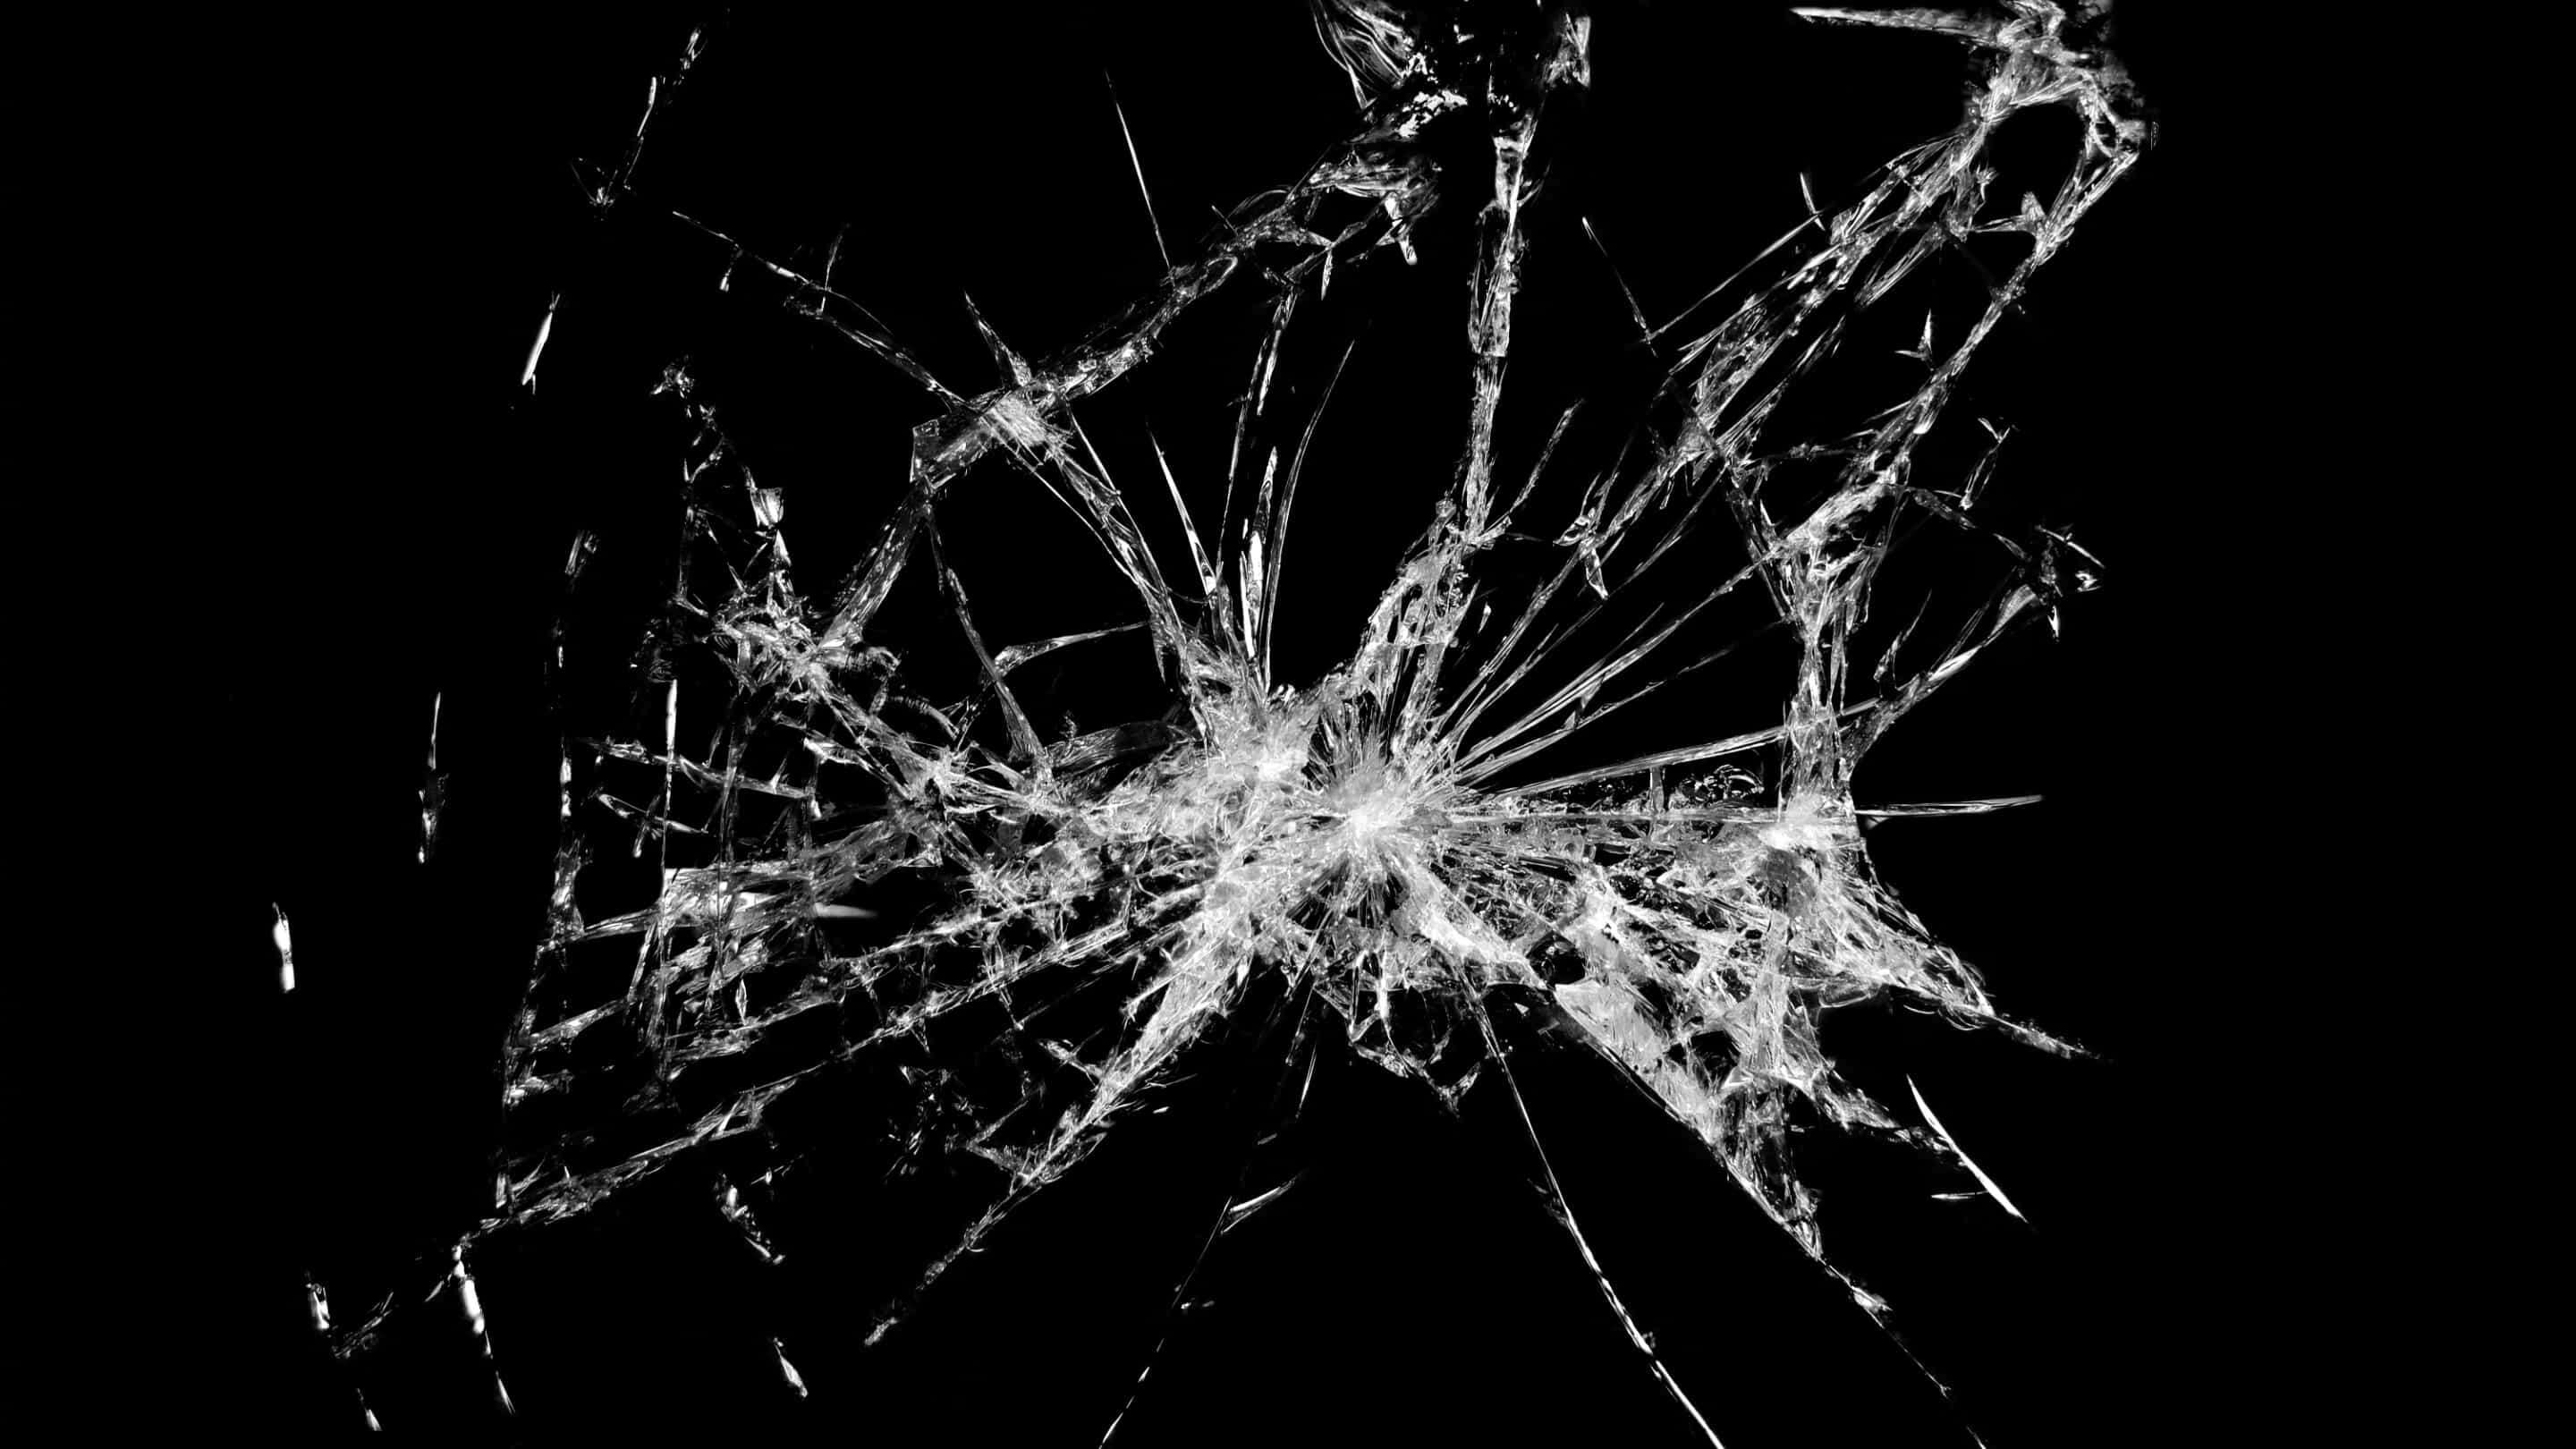 مقاومة تأثير الزجاج - مقاومة الصدمات الزجاجية نورمن زجاج مكسور به العديد من الشقوق